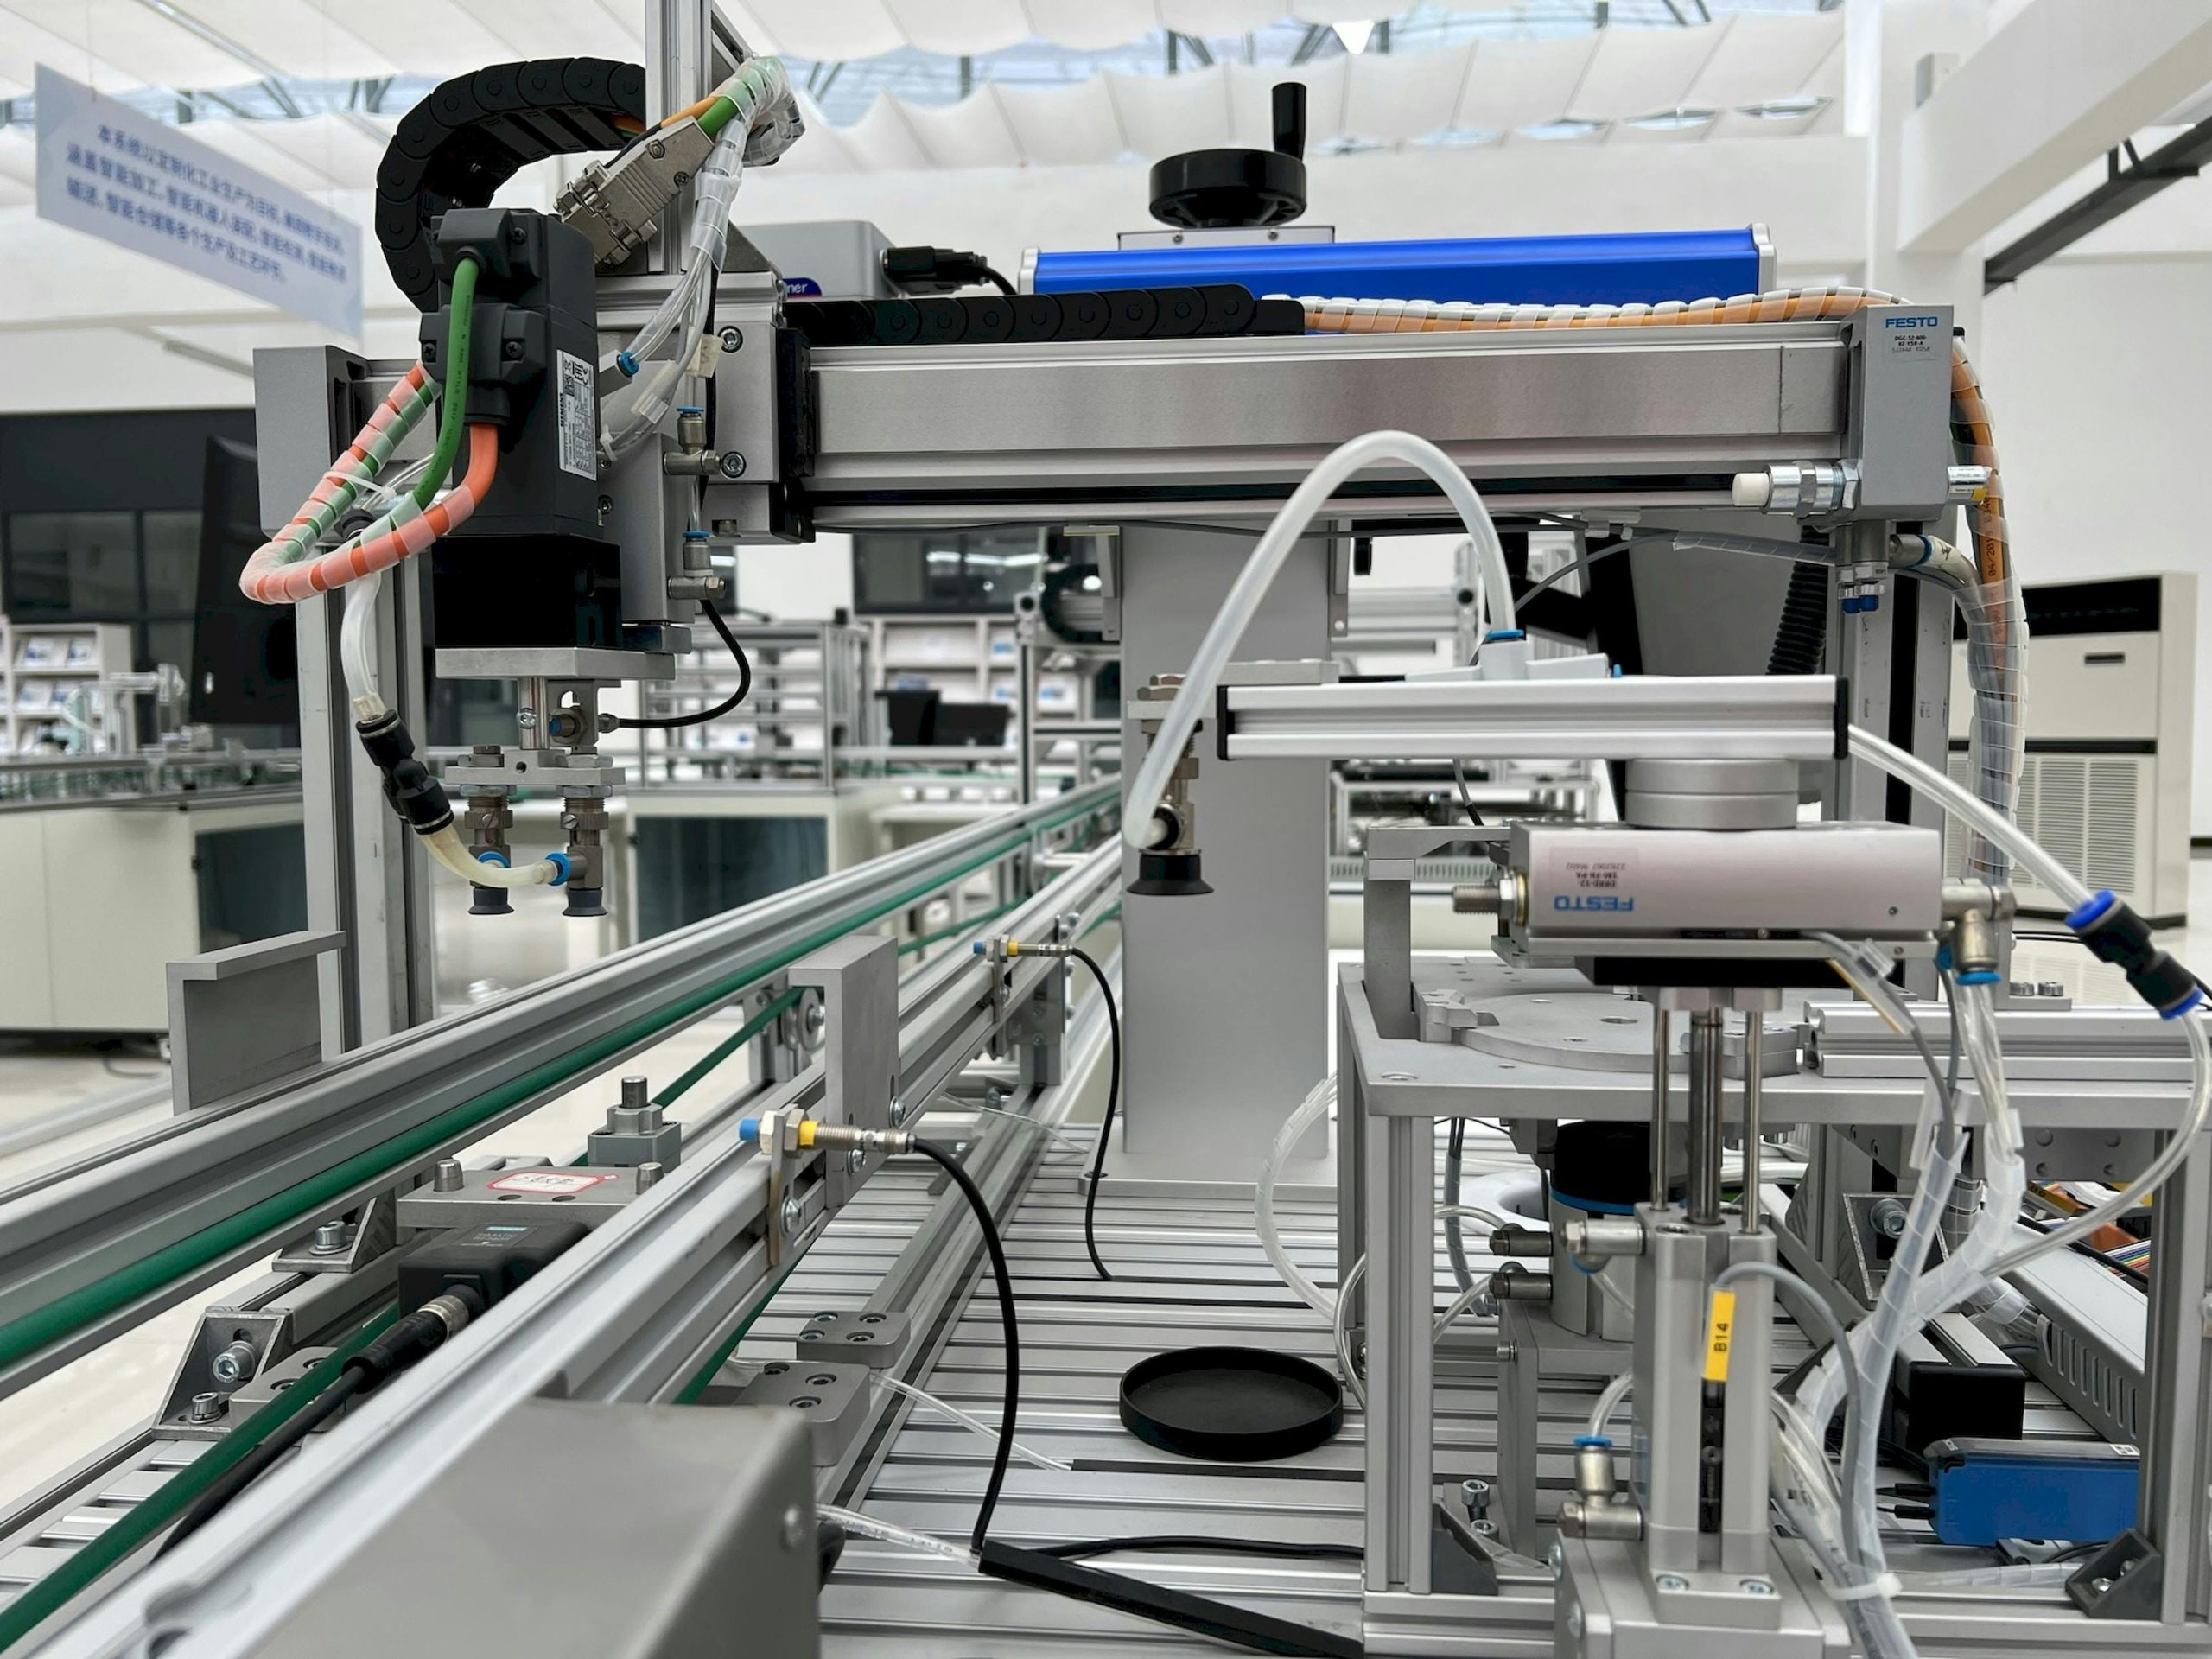 Maszyna z taśmą produkcyjną i plastikowymi wężami to jeden ze składników automatyzacja procesów przemysłowych